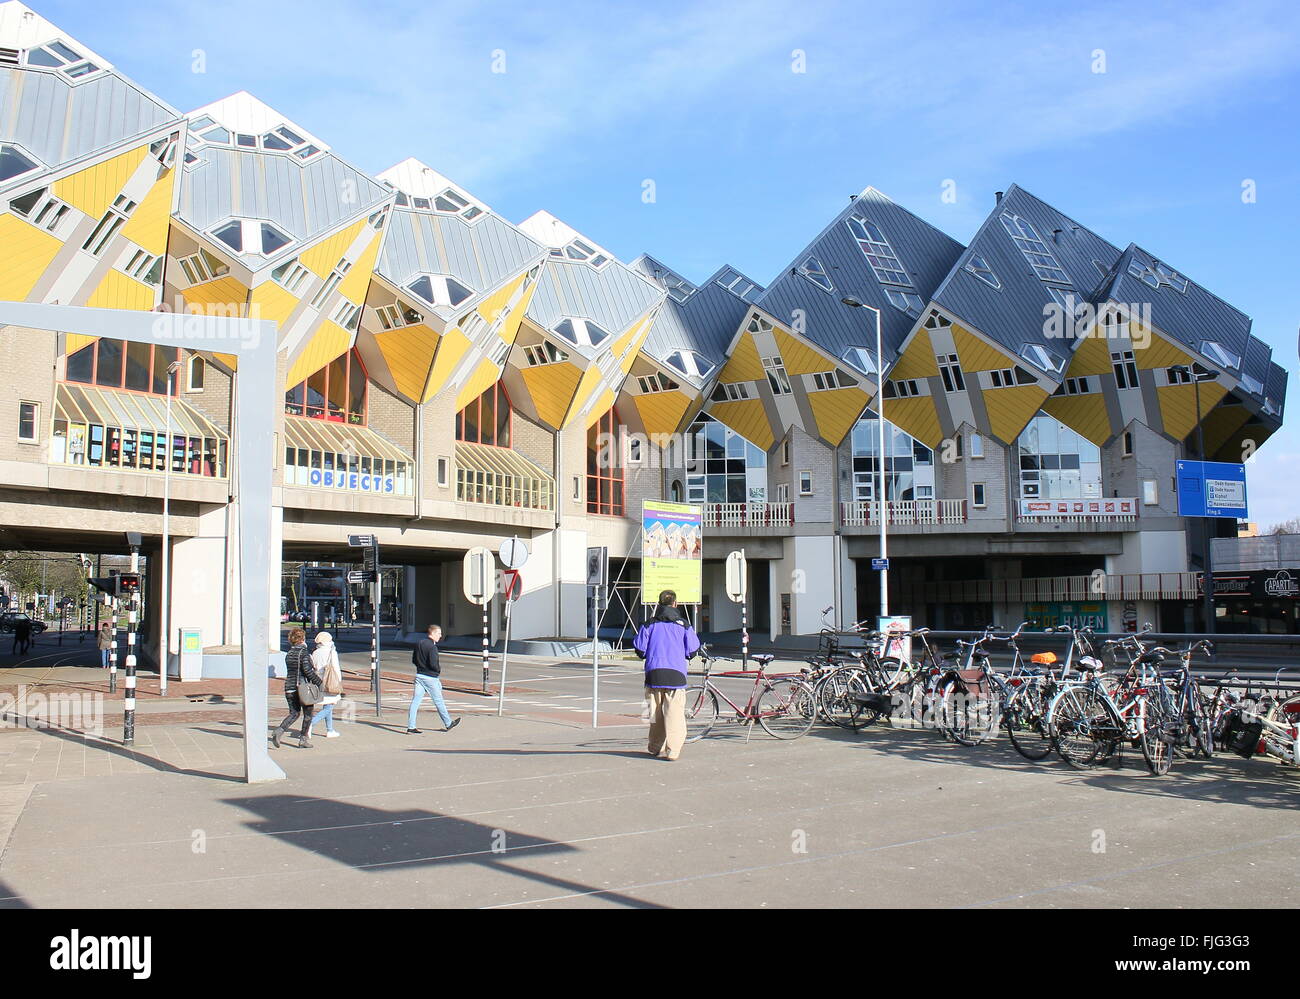 Kubuswoningen o case cubiche dagli anni settanta in Rotterdam Blaak, Paesi Bassi, progettato dall architetto olandese Piet Blom Foto Stock